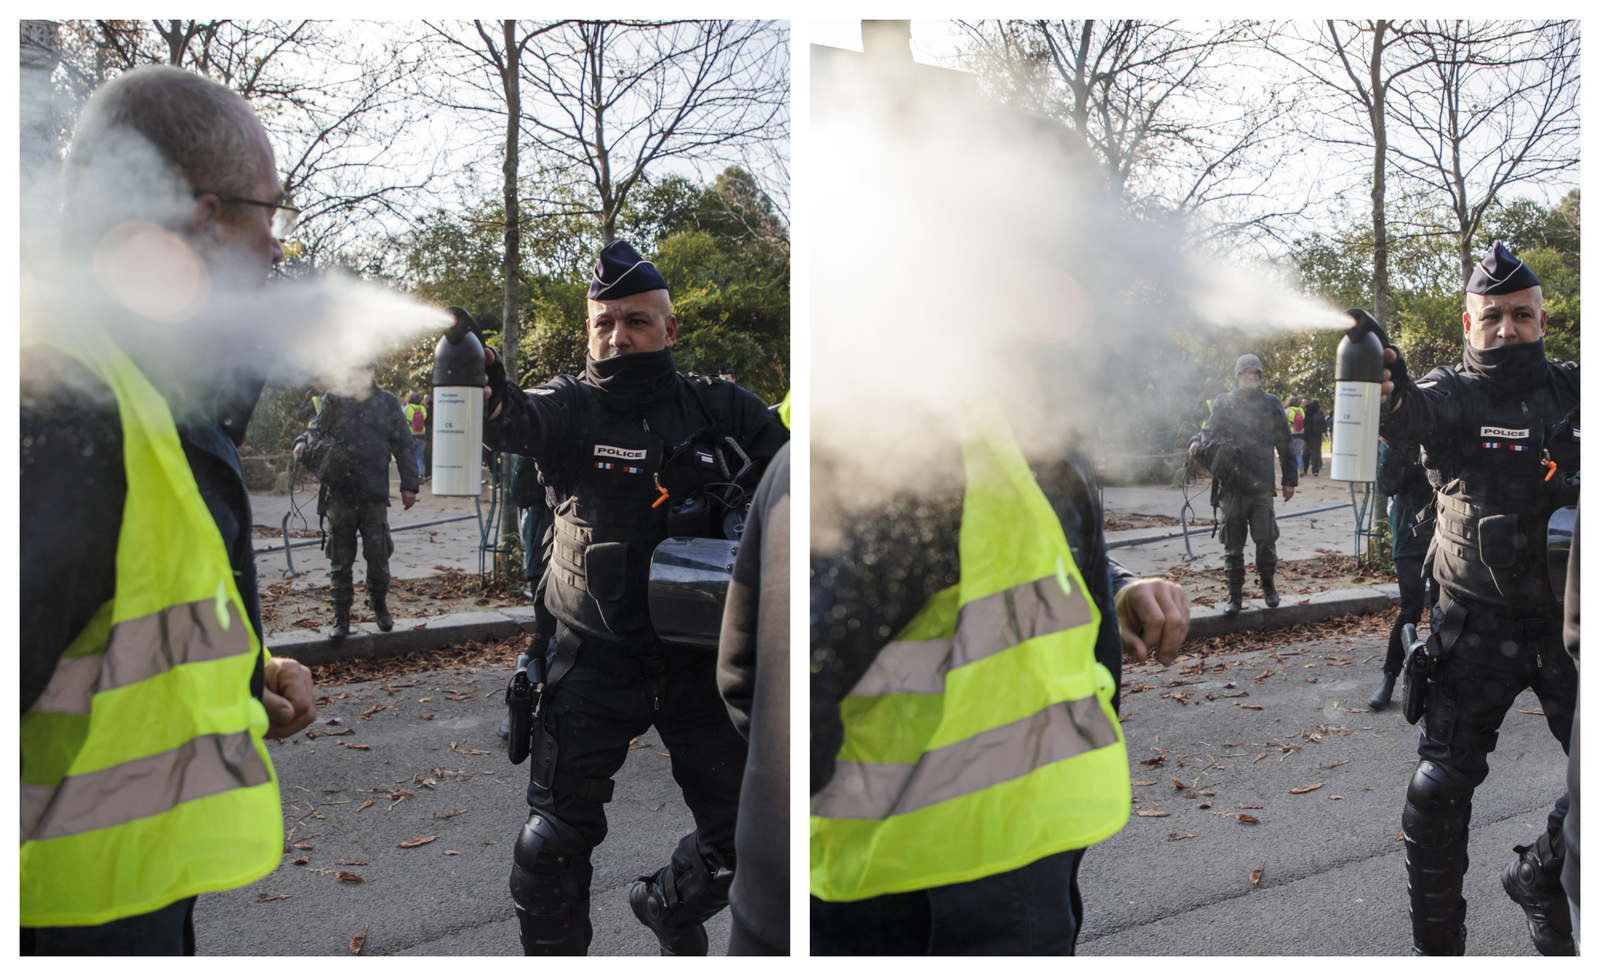 Reacción. Un oficial de policía usa gas lacrimógeno contra un manifestante ayer en París.